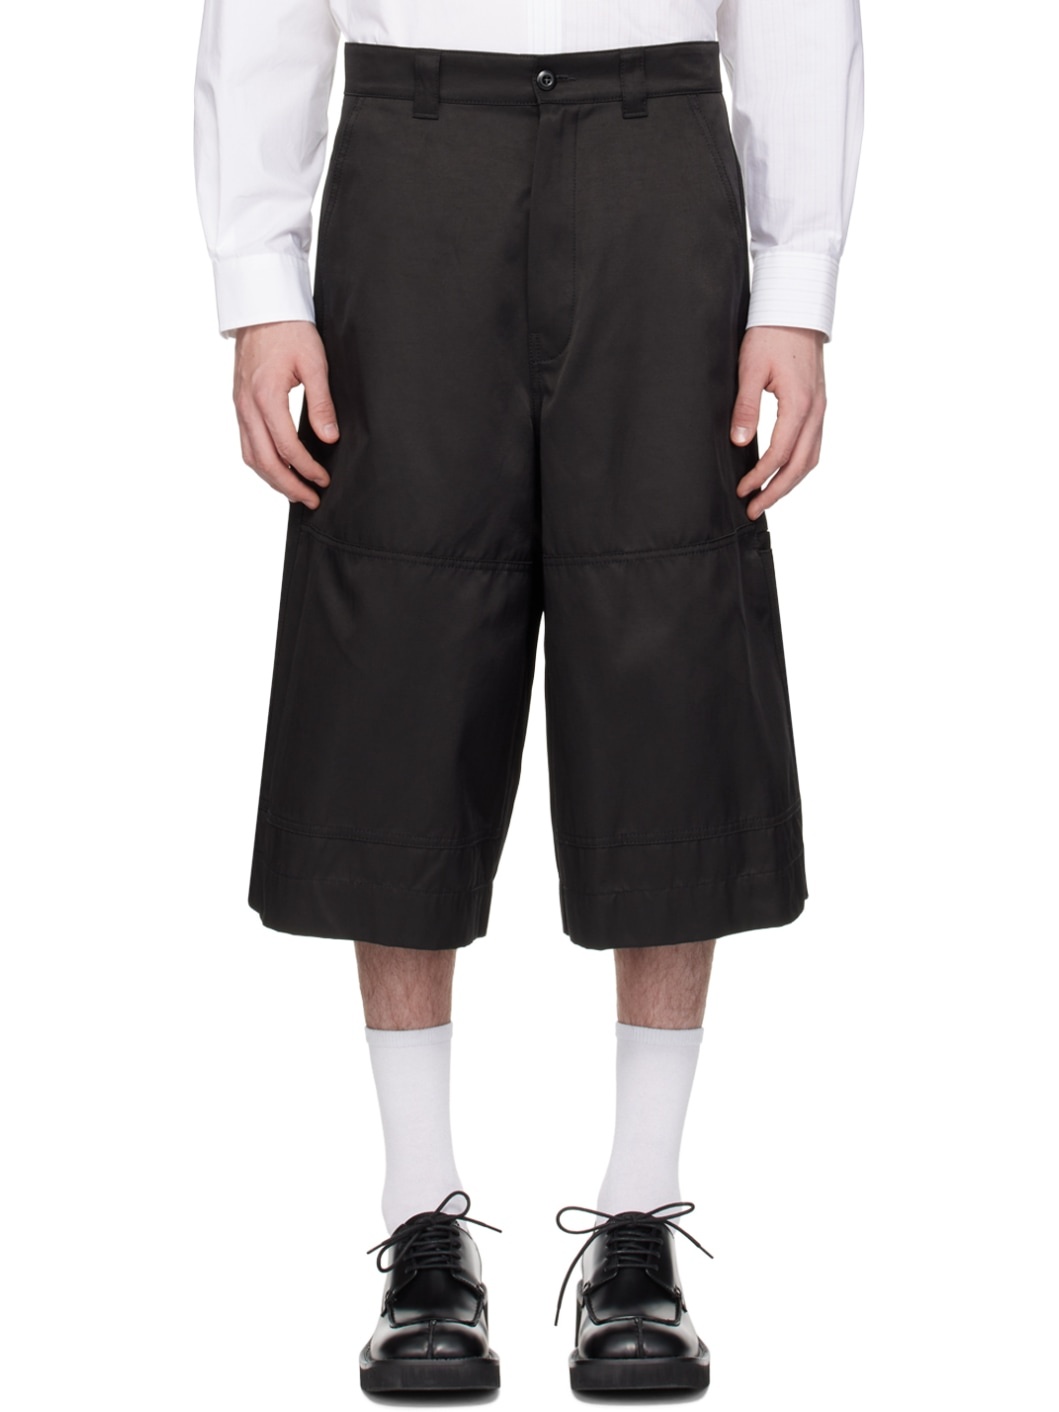 Black Paneled Shorts - 1